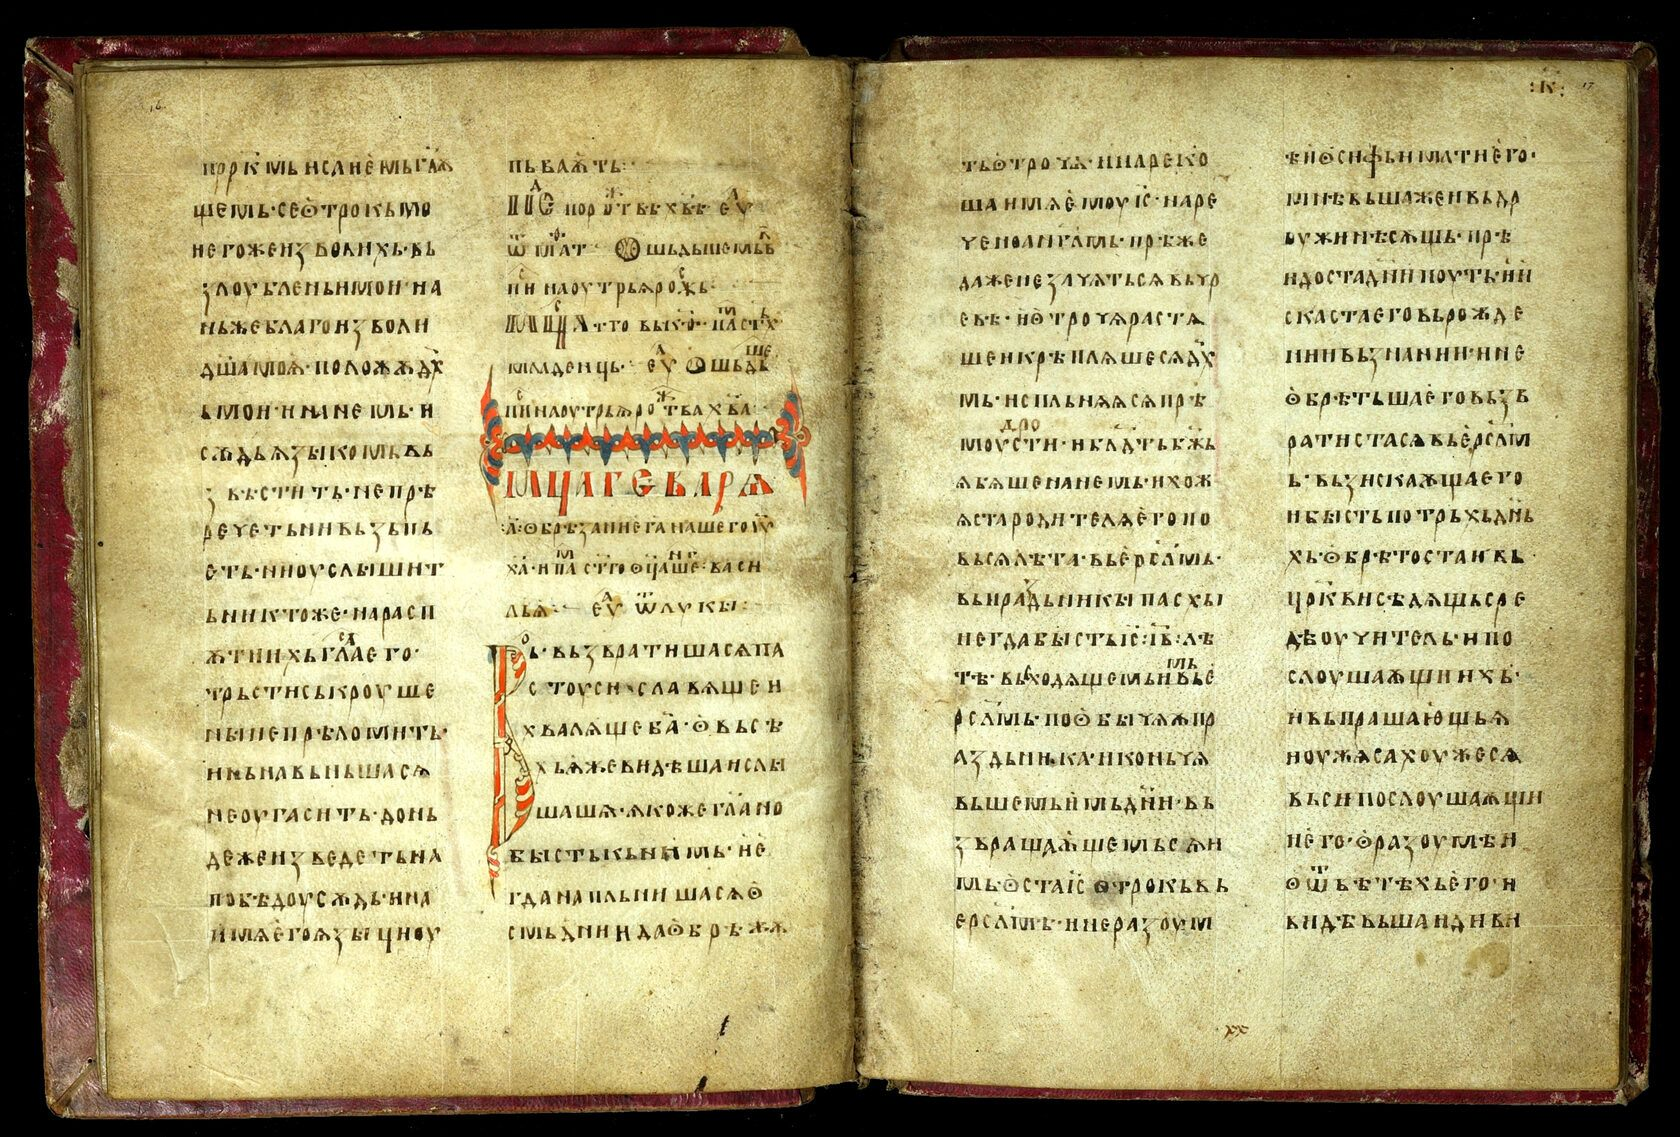 Реймське Євангеліє, фото з сайту музеїв Московського Кремля